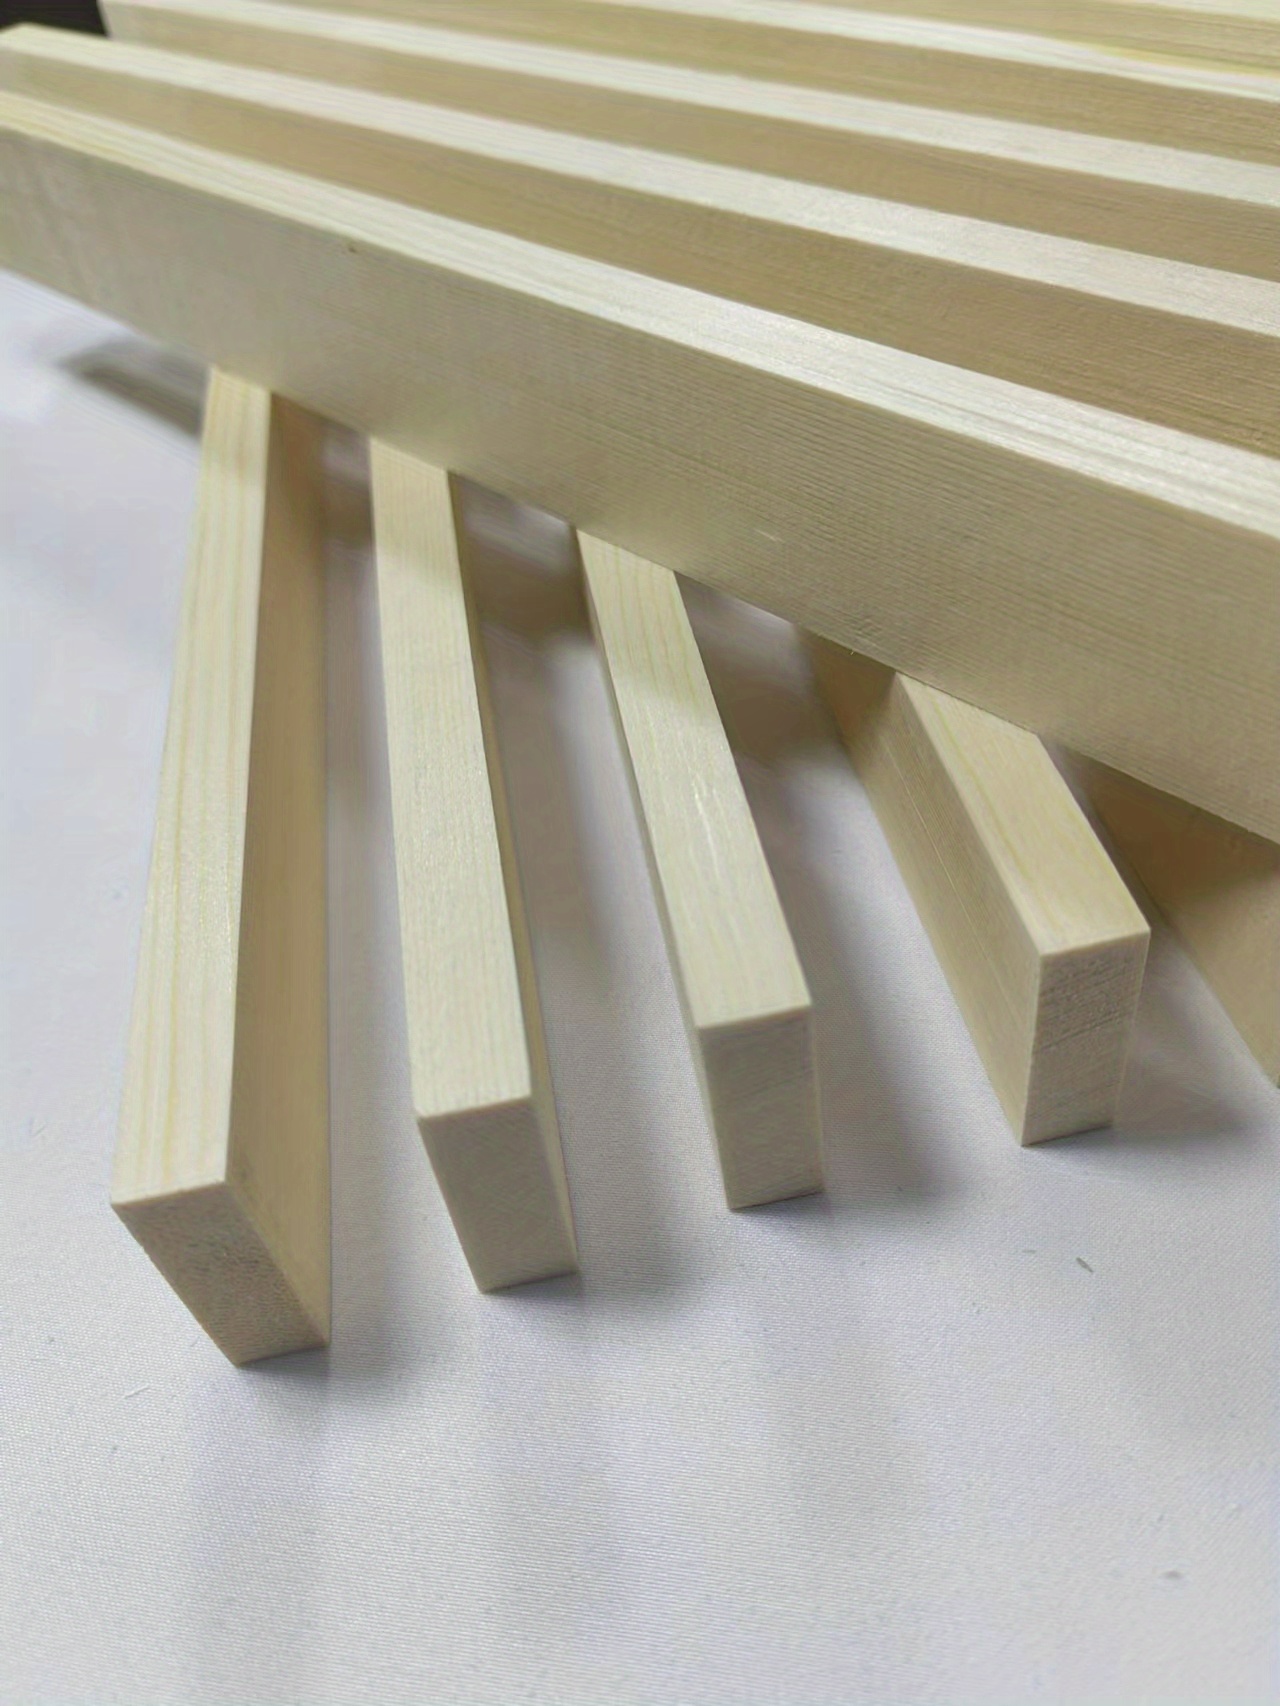  HJZALMI Tacos de madera cuadrados, tiras de madera sin  terminar, tiras de madera para manualidades, proyectos de bricolaje,  modelos, suministros de fabricación de soporte, personalización (color :  0.8 x 2.0 in